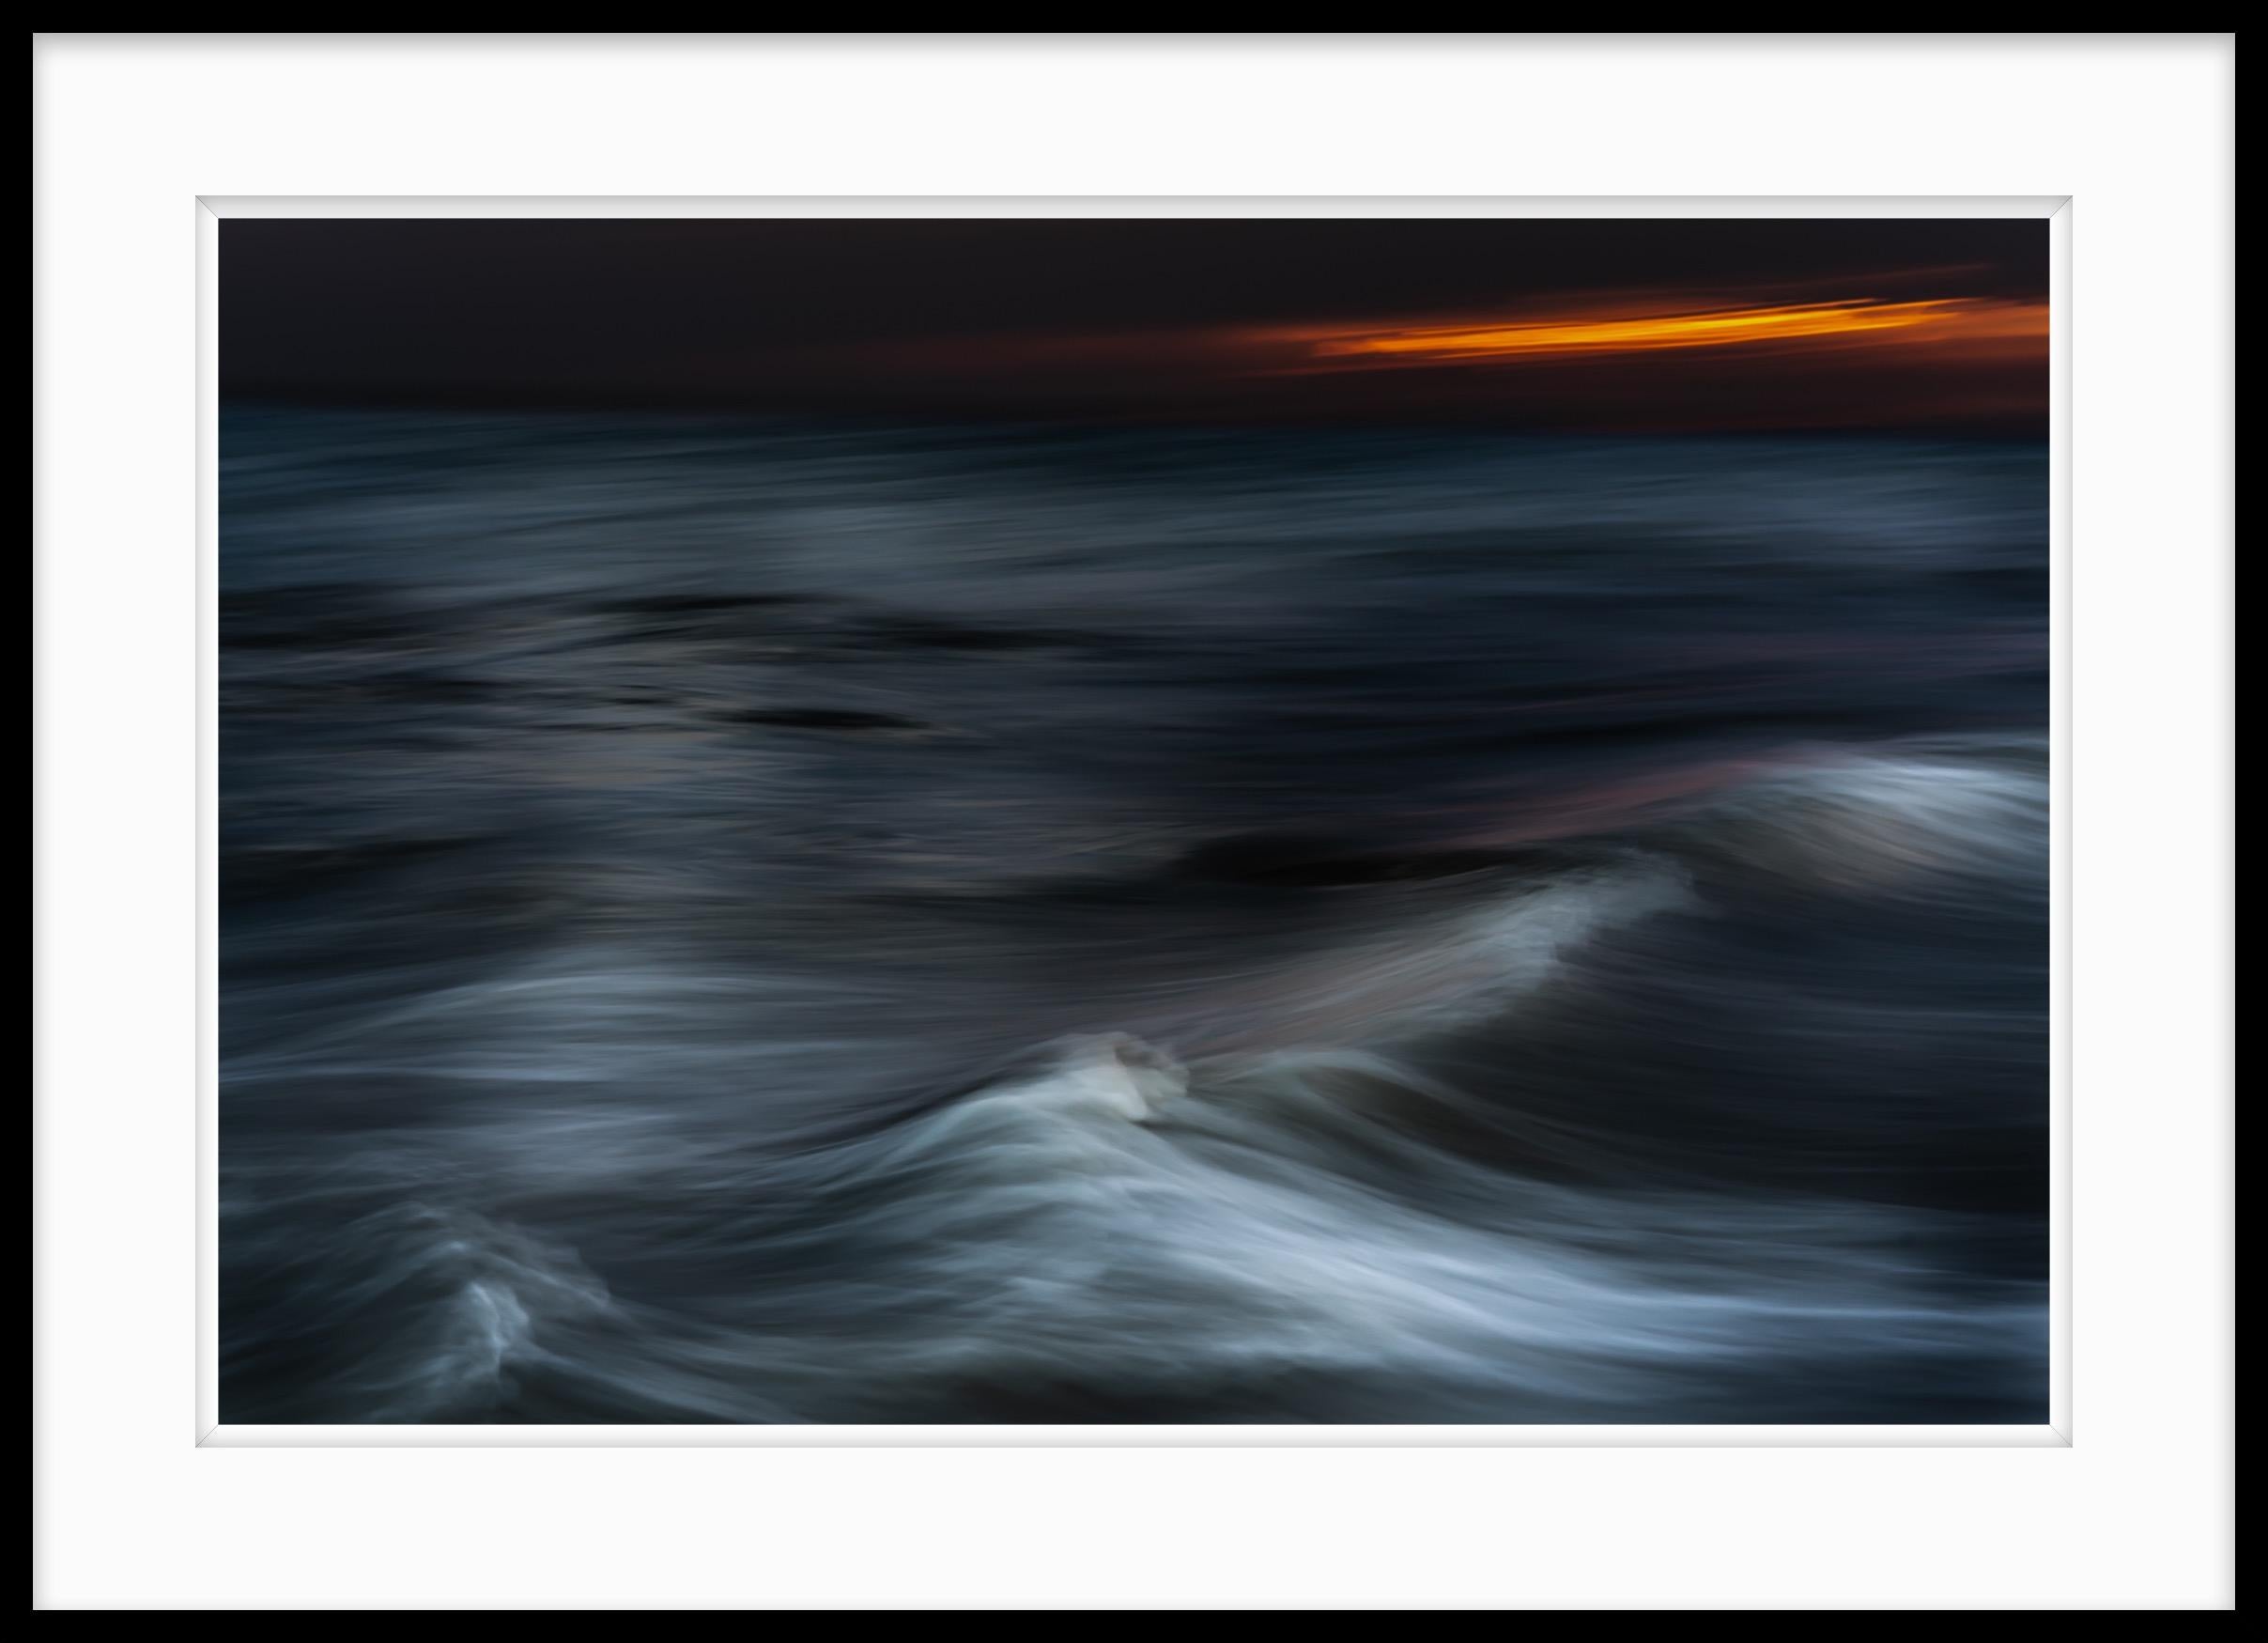  Farbfotografie Ozean – „Daybreak Kinetic Solitude“ in limitierter Auflage, 20 x 24 – Photograph von Howard Lewis